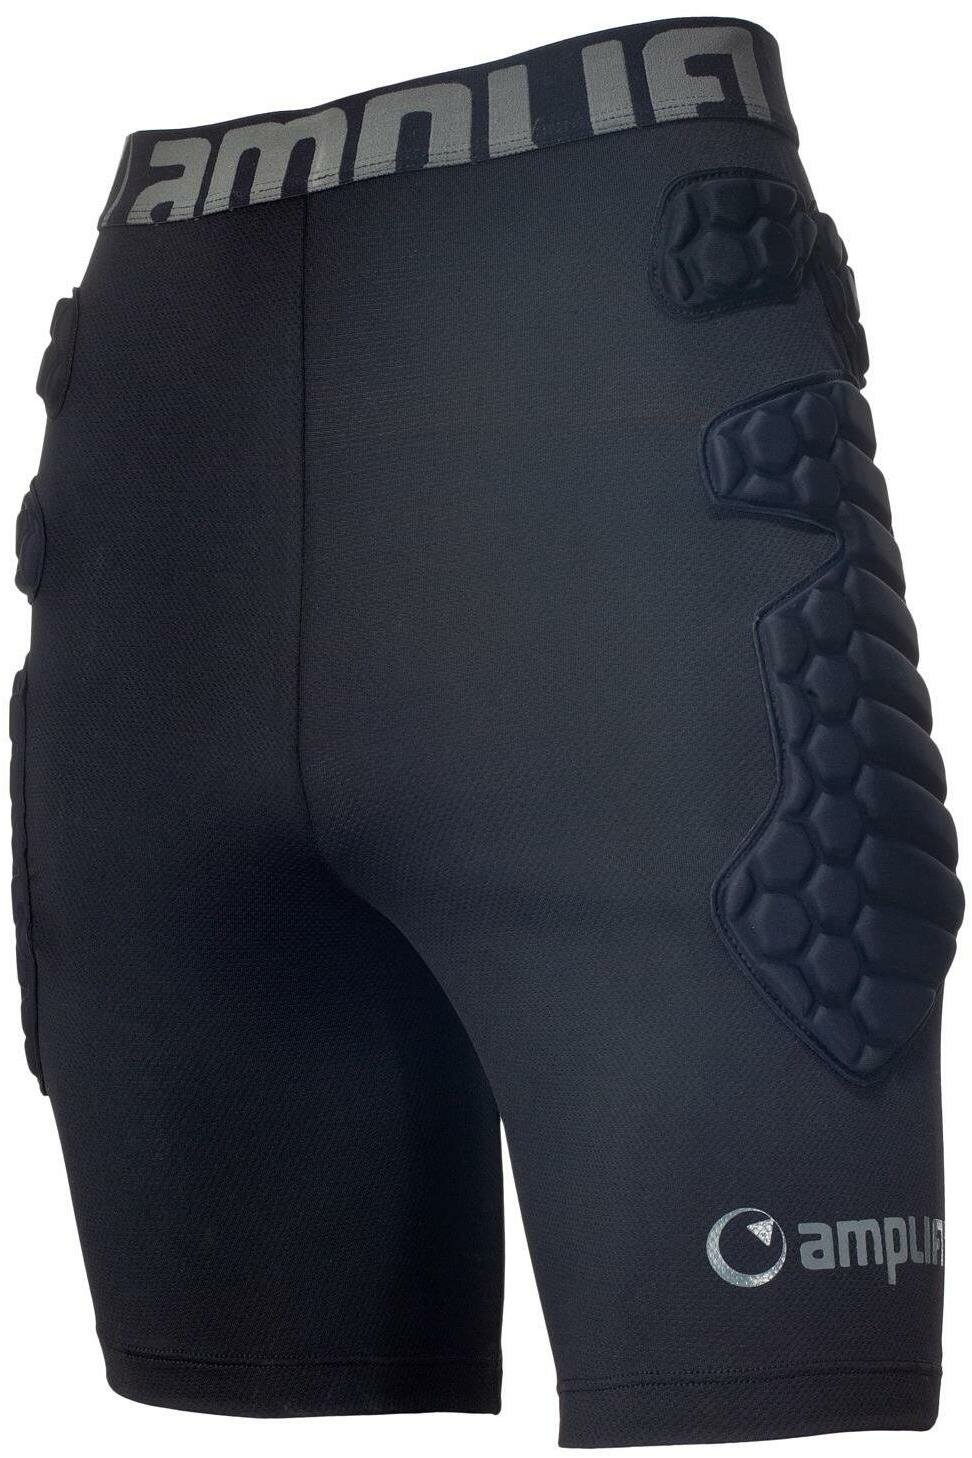 Защитные шорты Amplifi Salvo Pant Black (US: XS)